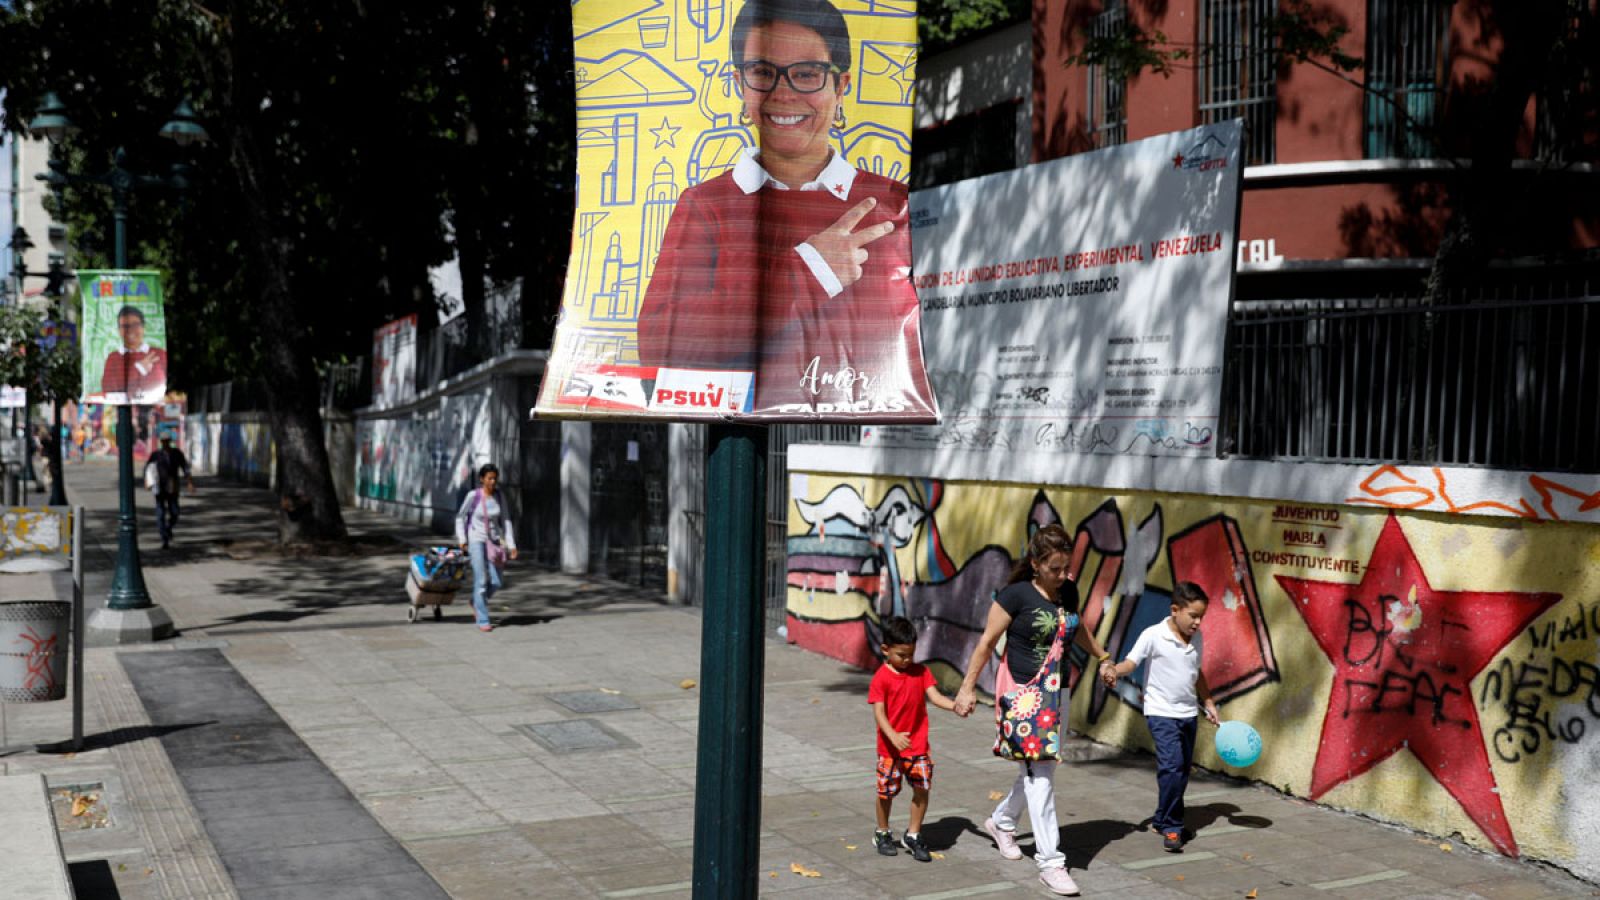 Imagen de un cartel electoral en una calle de Caracas (Venezuela).